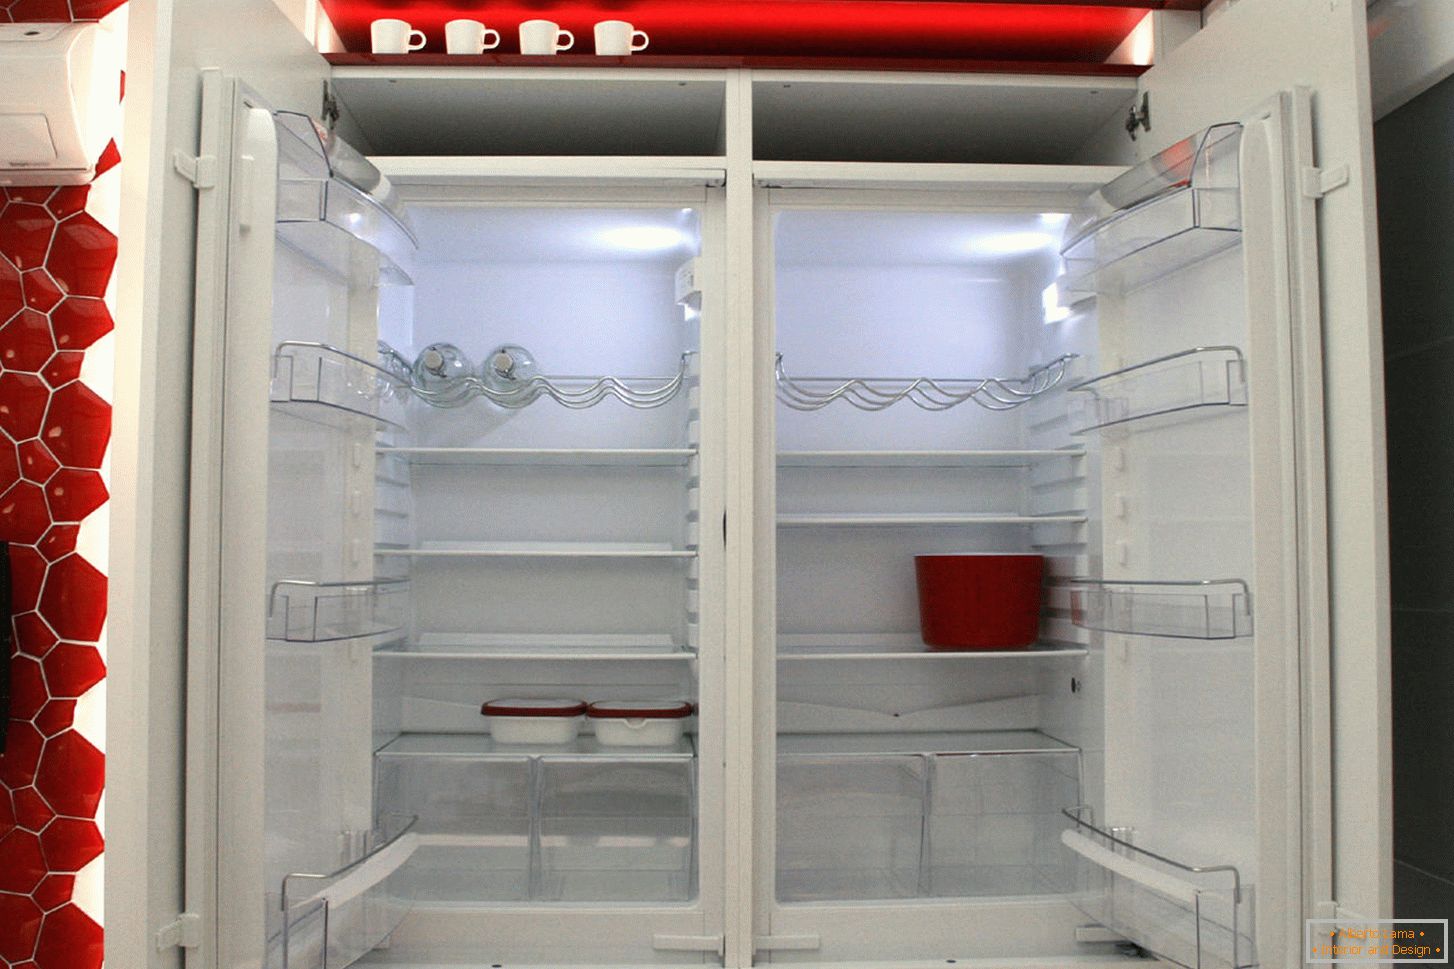 Refrigerador moderno no interior da cozinha